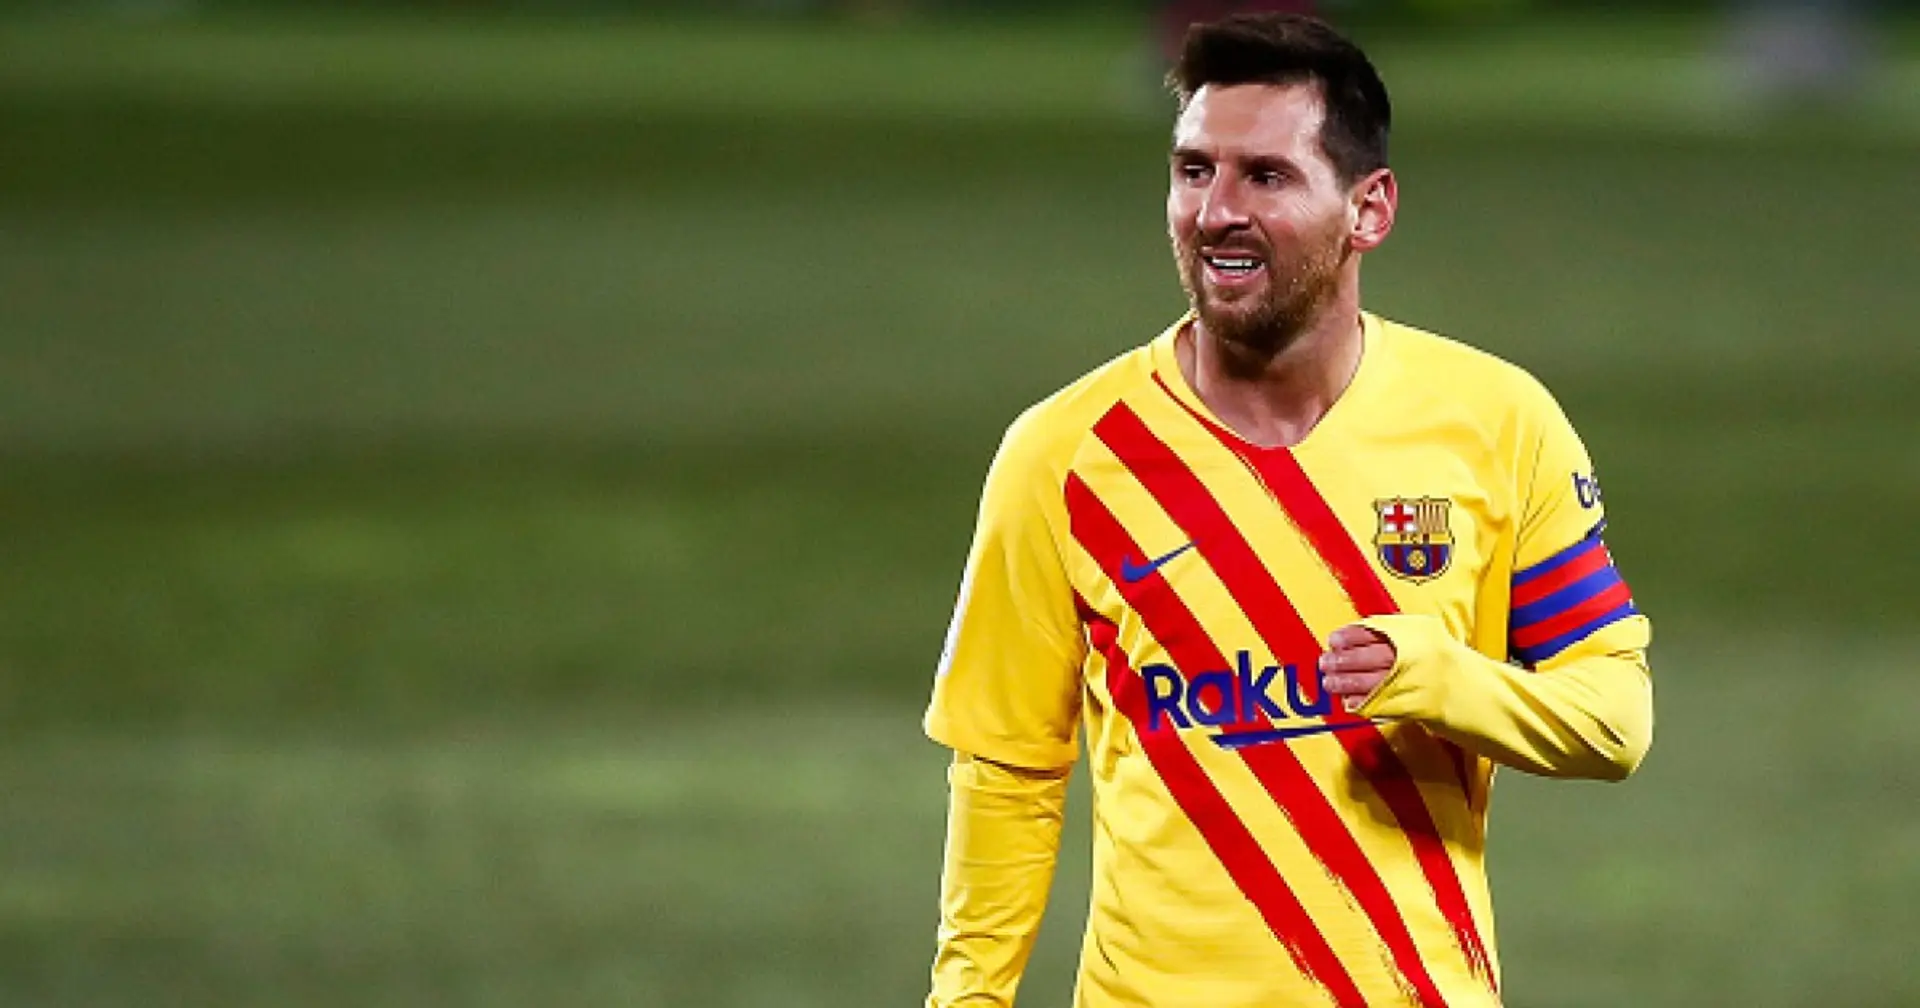 El Manchester City confía en fichar a Messi en el próximo verano (fiabilidad: 4 estrellas)